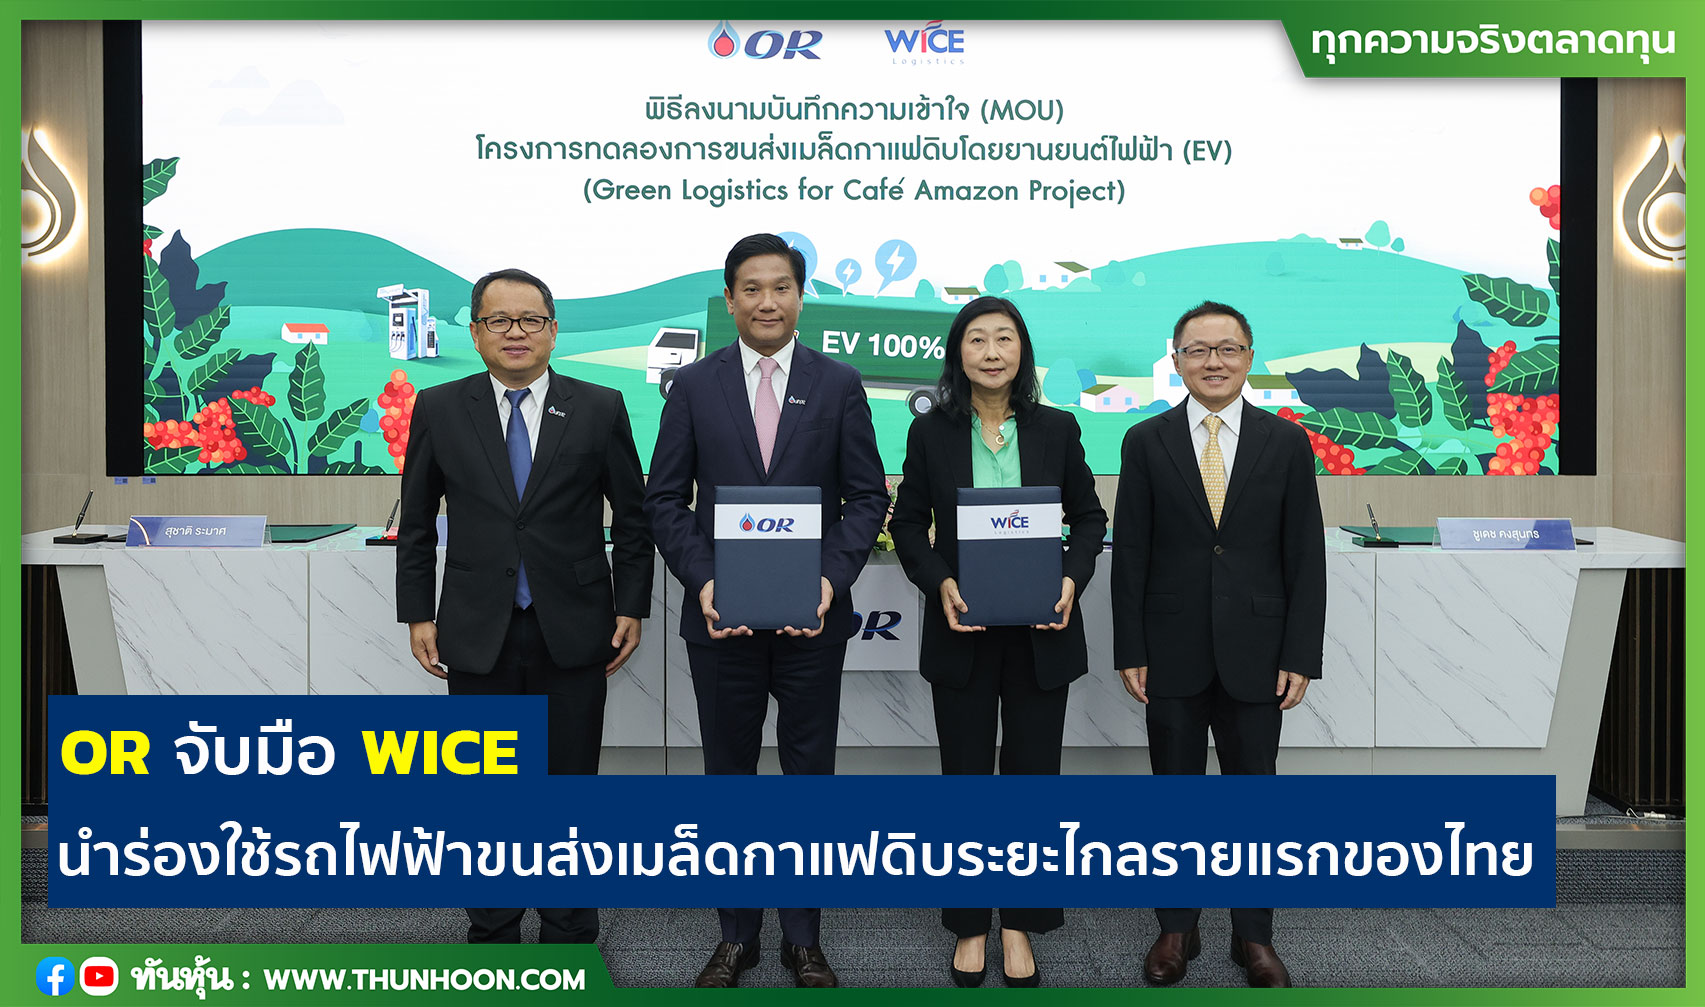 OR จับมือ WICE นำร่องใช้รถไฟฟ้าขนส่งเมล็ดกาแฟดิบระยะไกลรายแรกของไทย